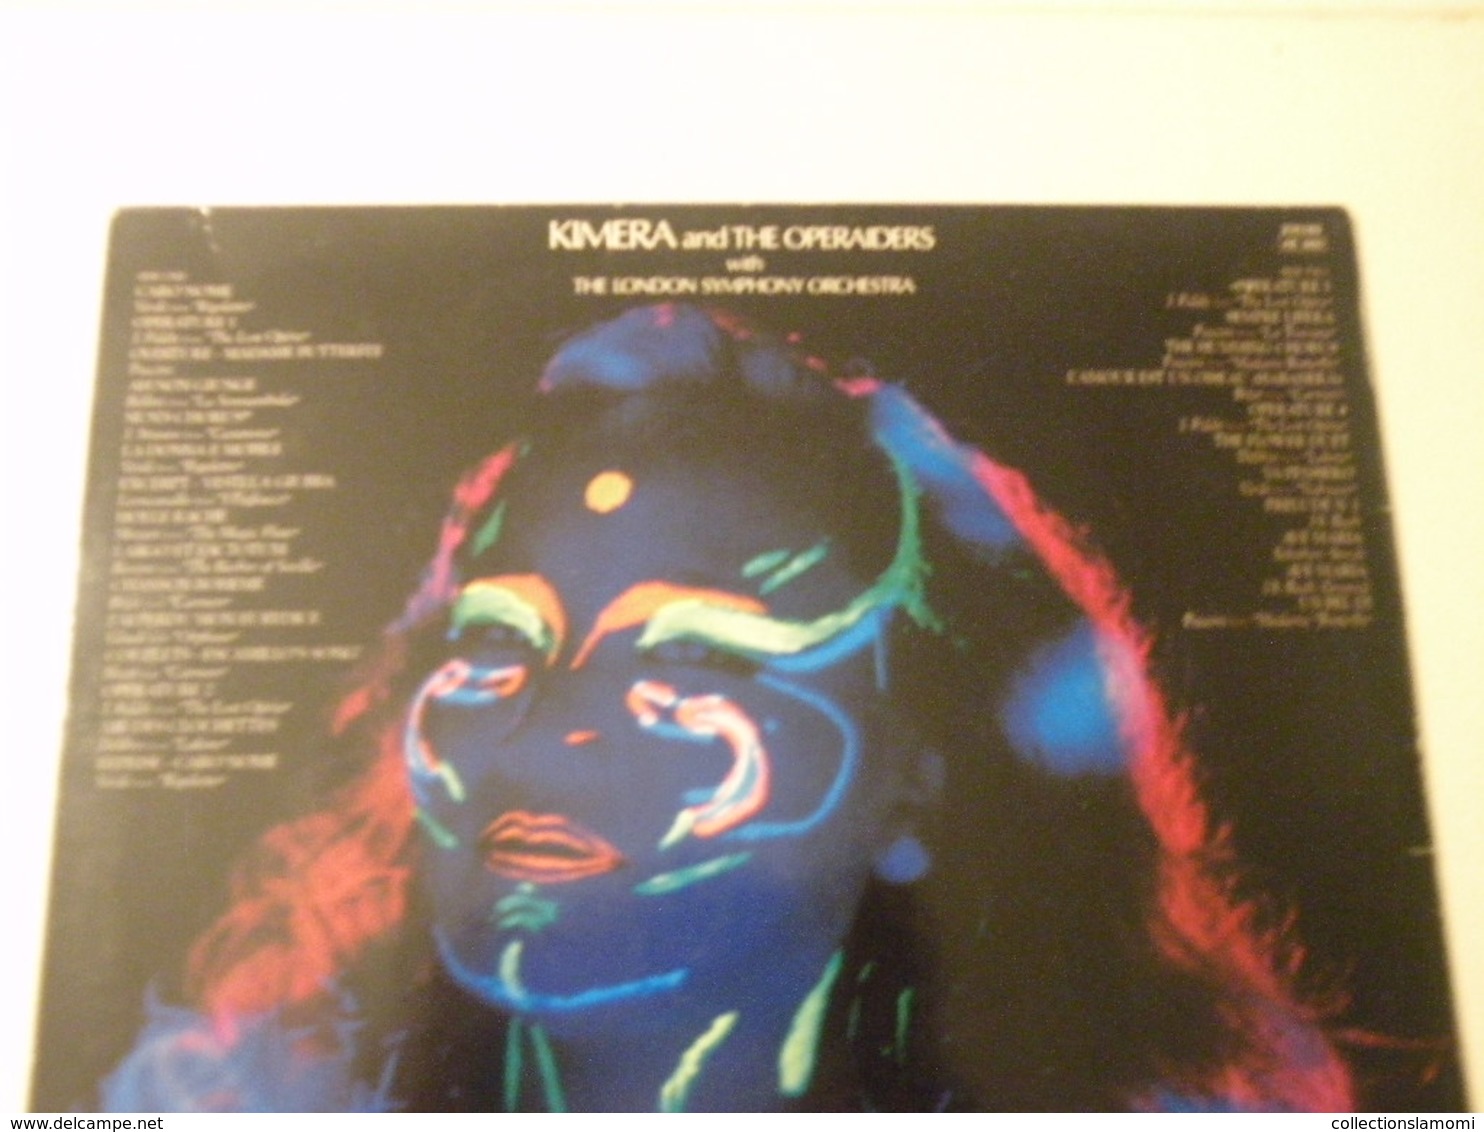 Kimera. The Lost Opéra (Titres sur photos) - Vinyle 33 T LP